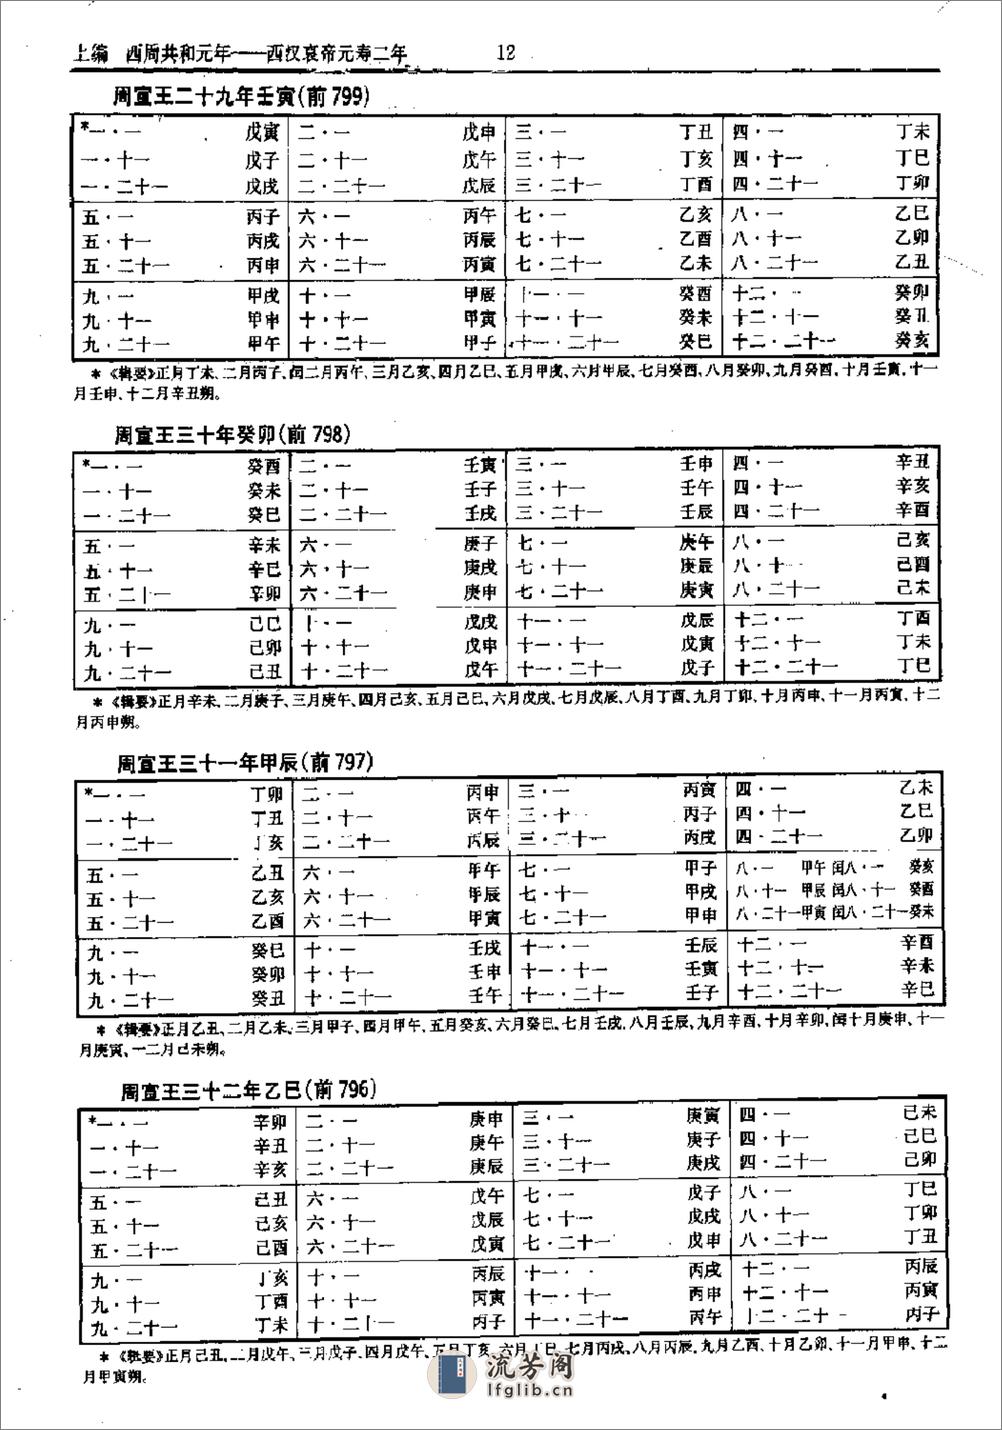 中国史历日和中西历日对照表·方诗铭·上海辞书1 - 第17页预览图